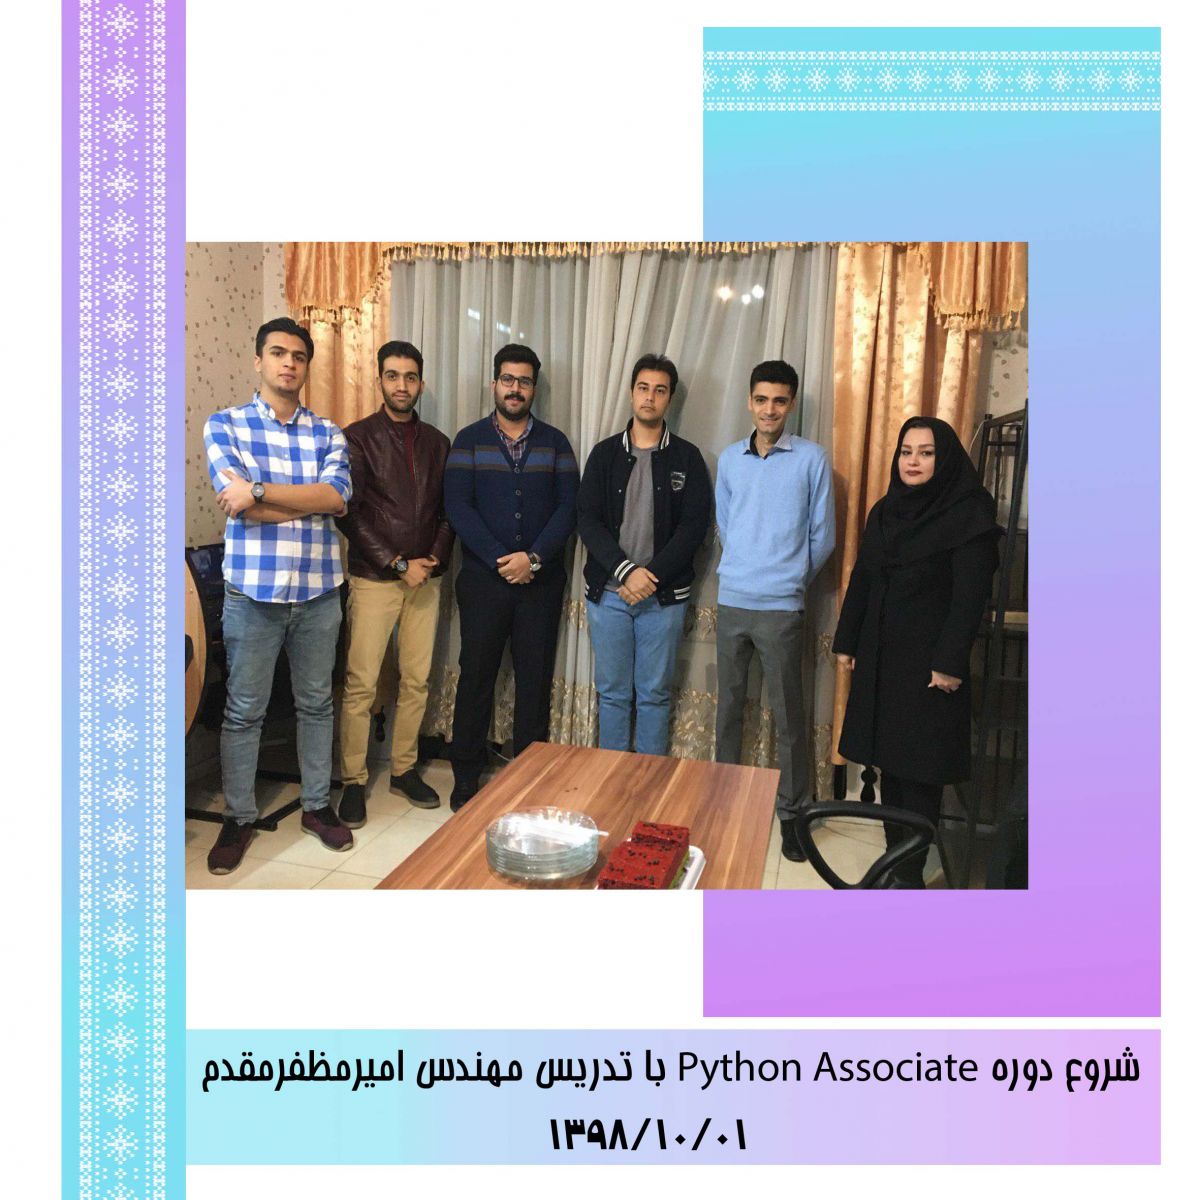 جشن شروع دوره Python Associate با تدریس مهندس امیر مظفرمقدم